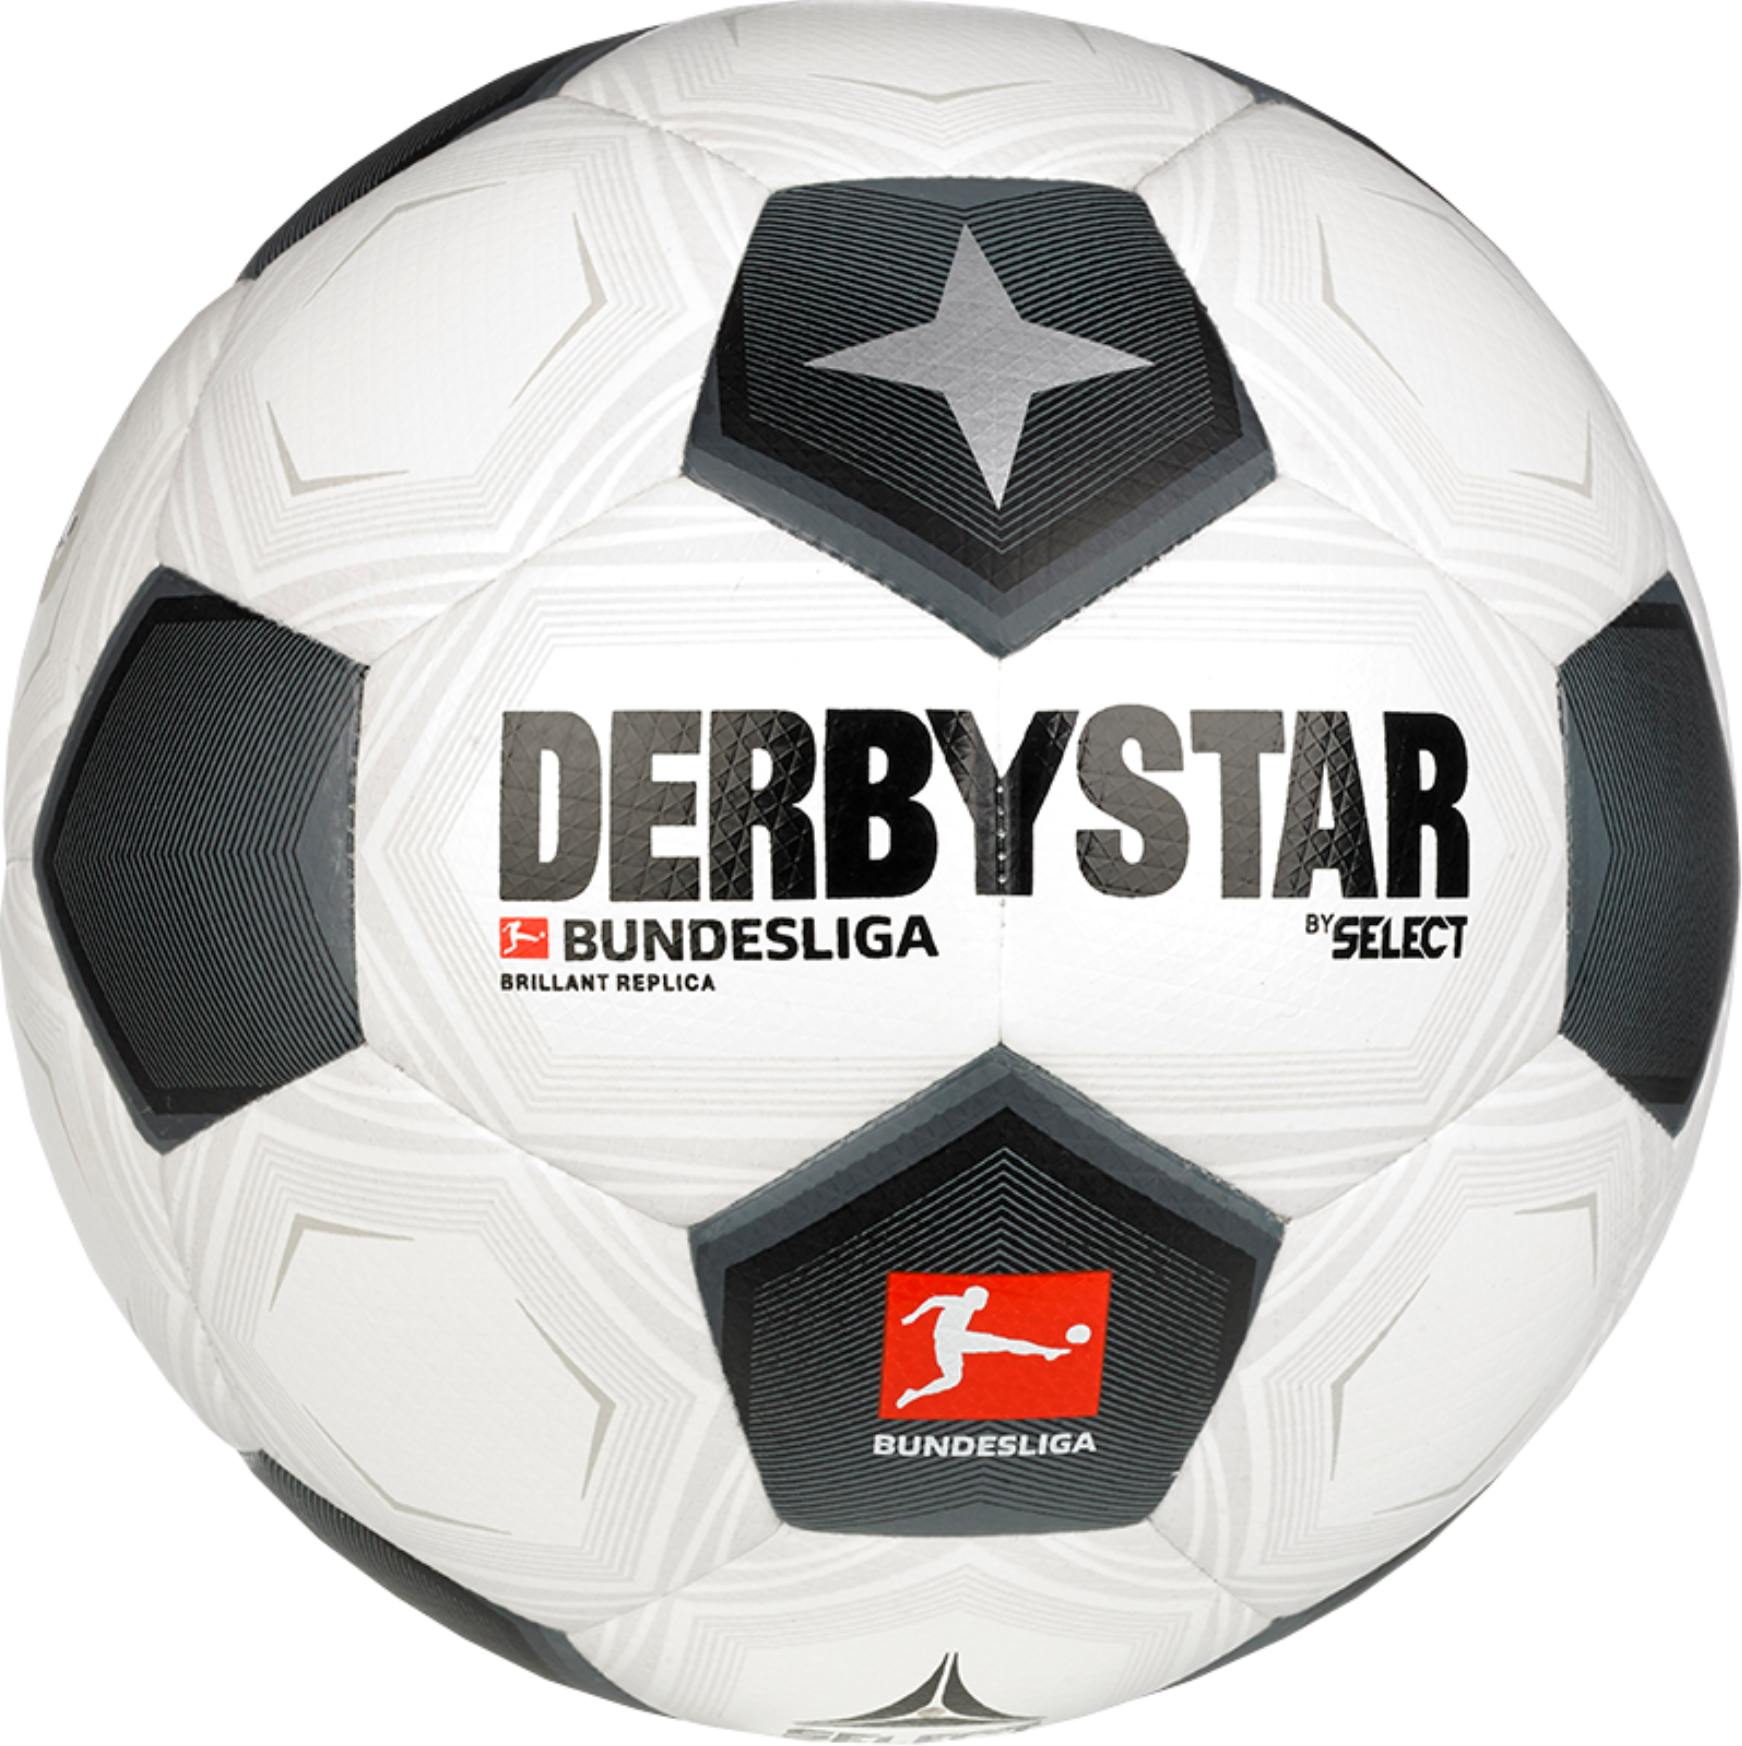 Minge Derbystar Bundesliga Brillant Replica Classic v23